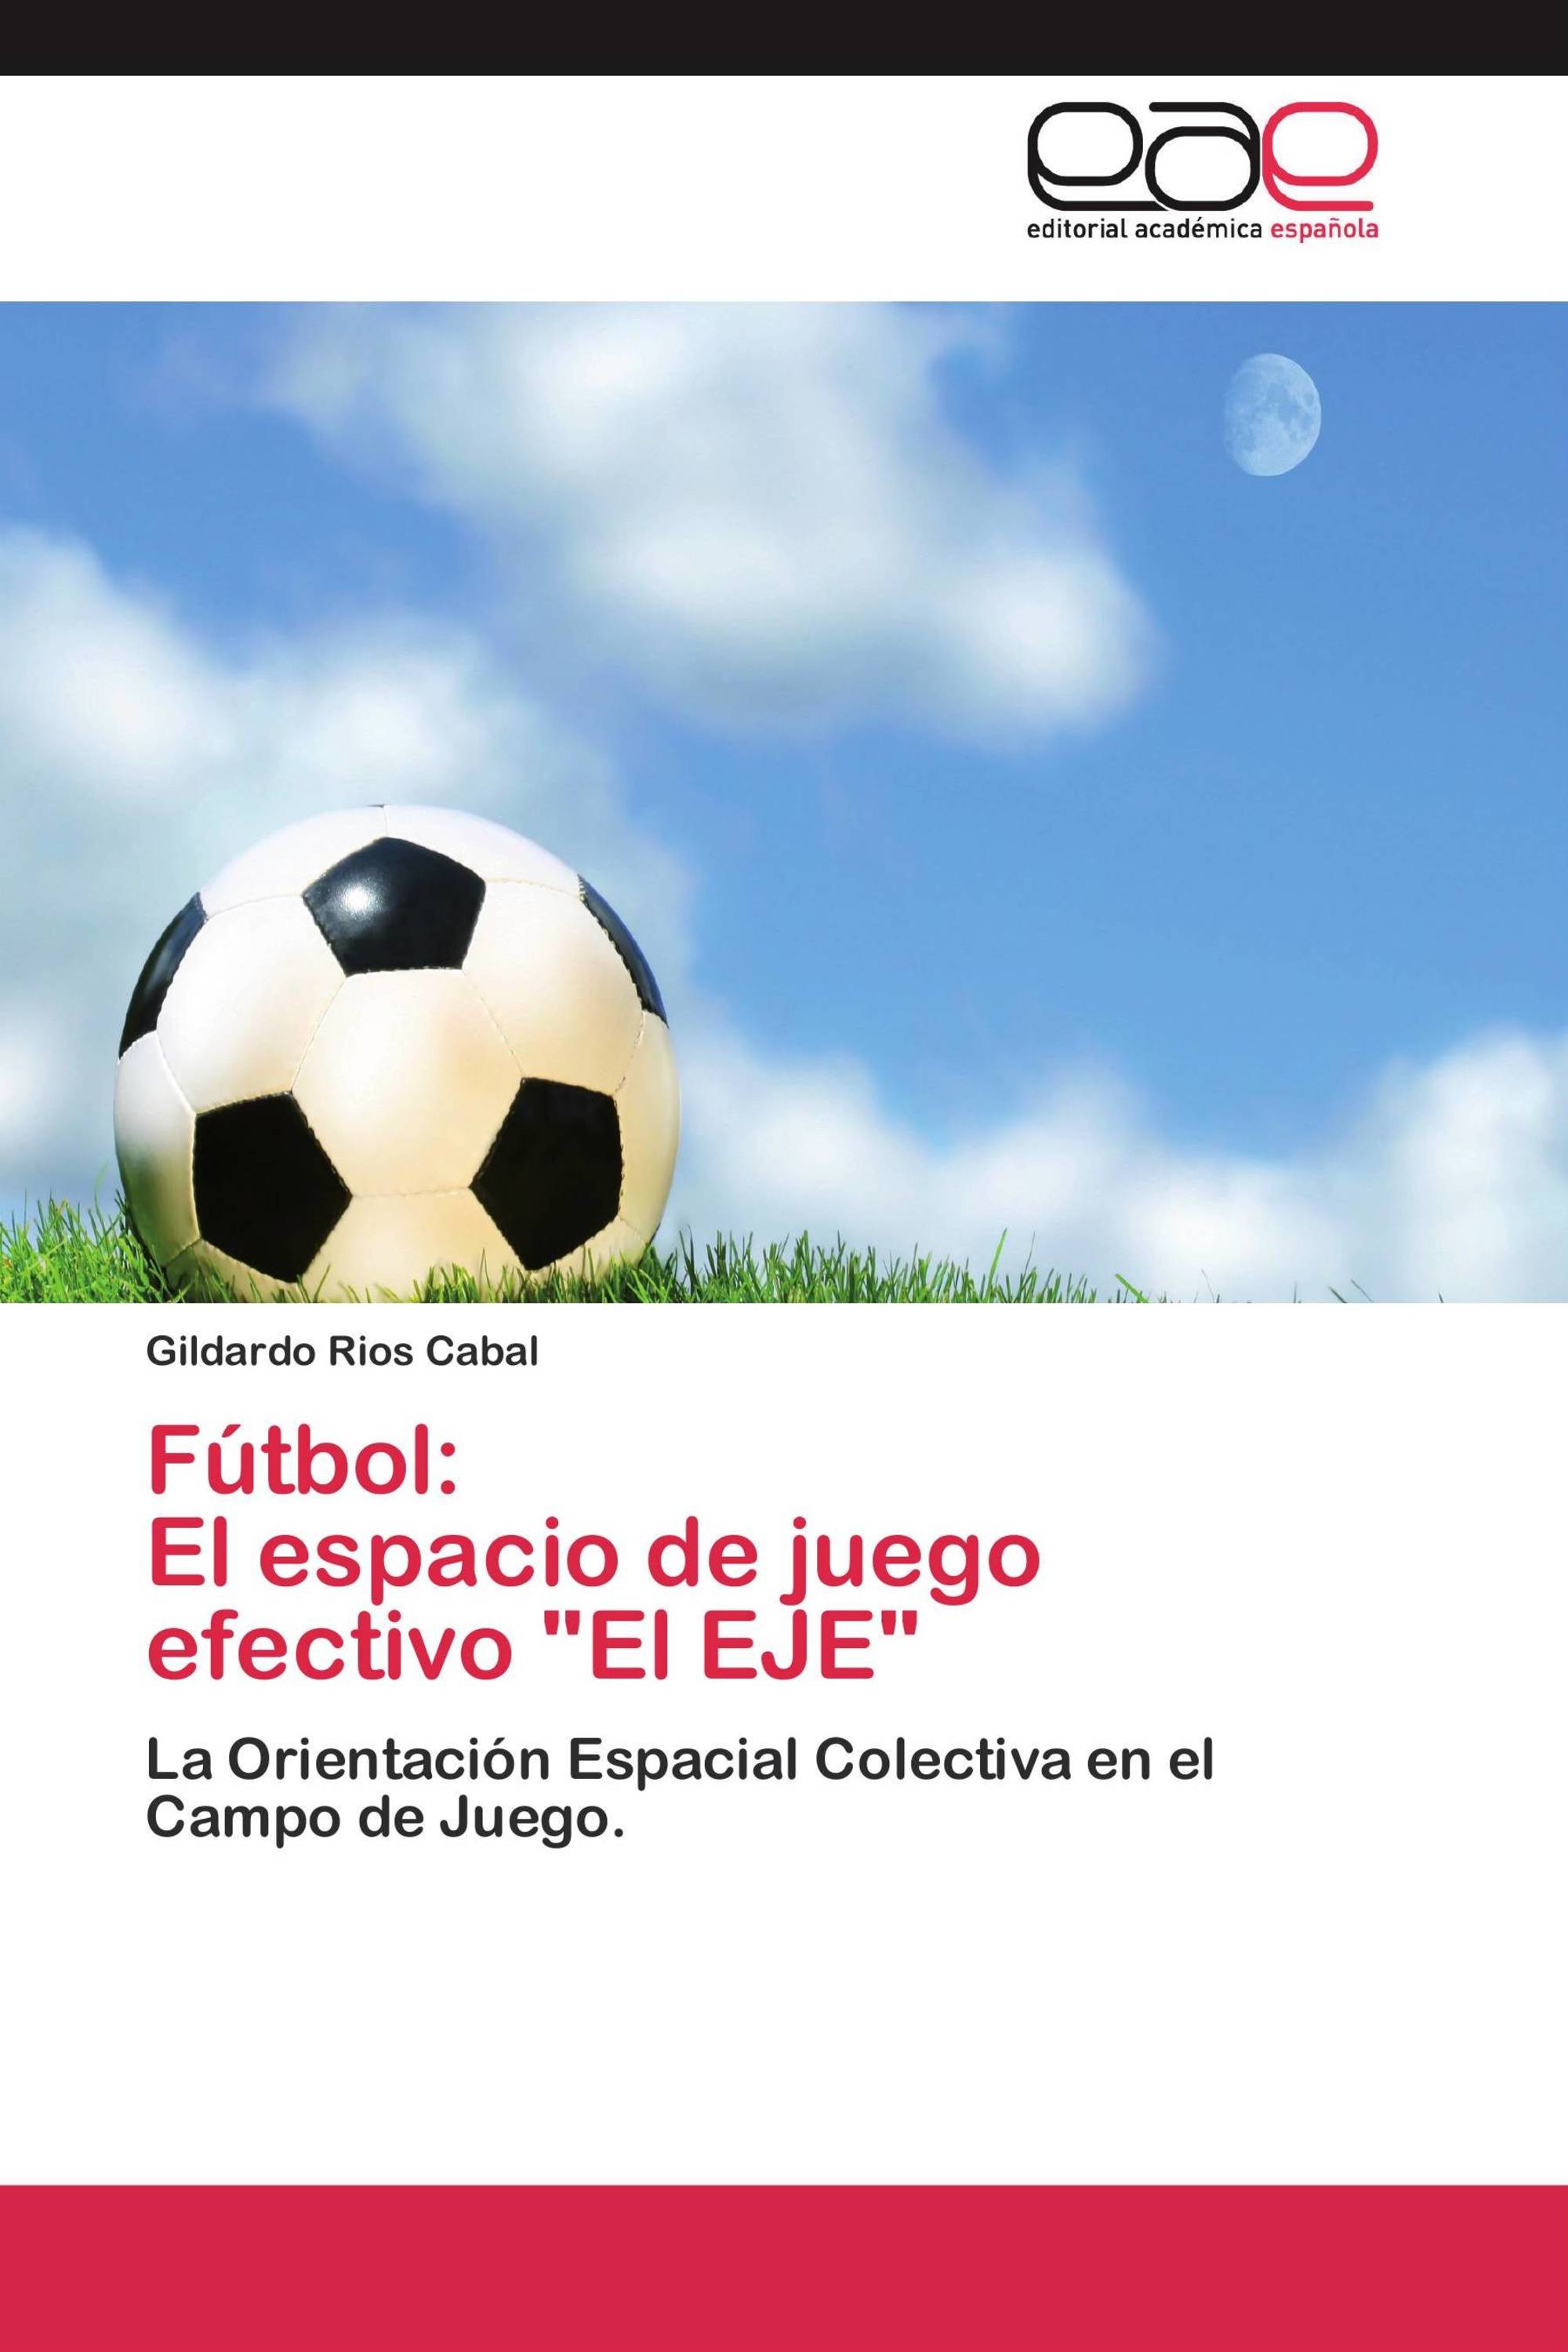 Fútbol: El espacio de juego efectivo "El EJE"